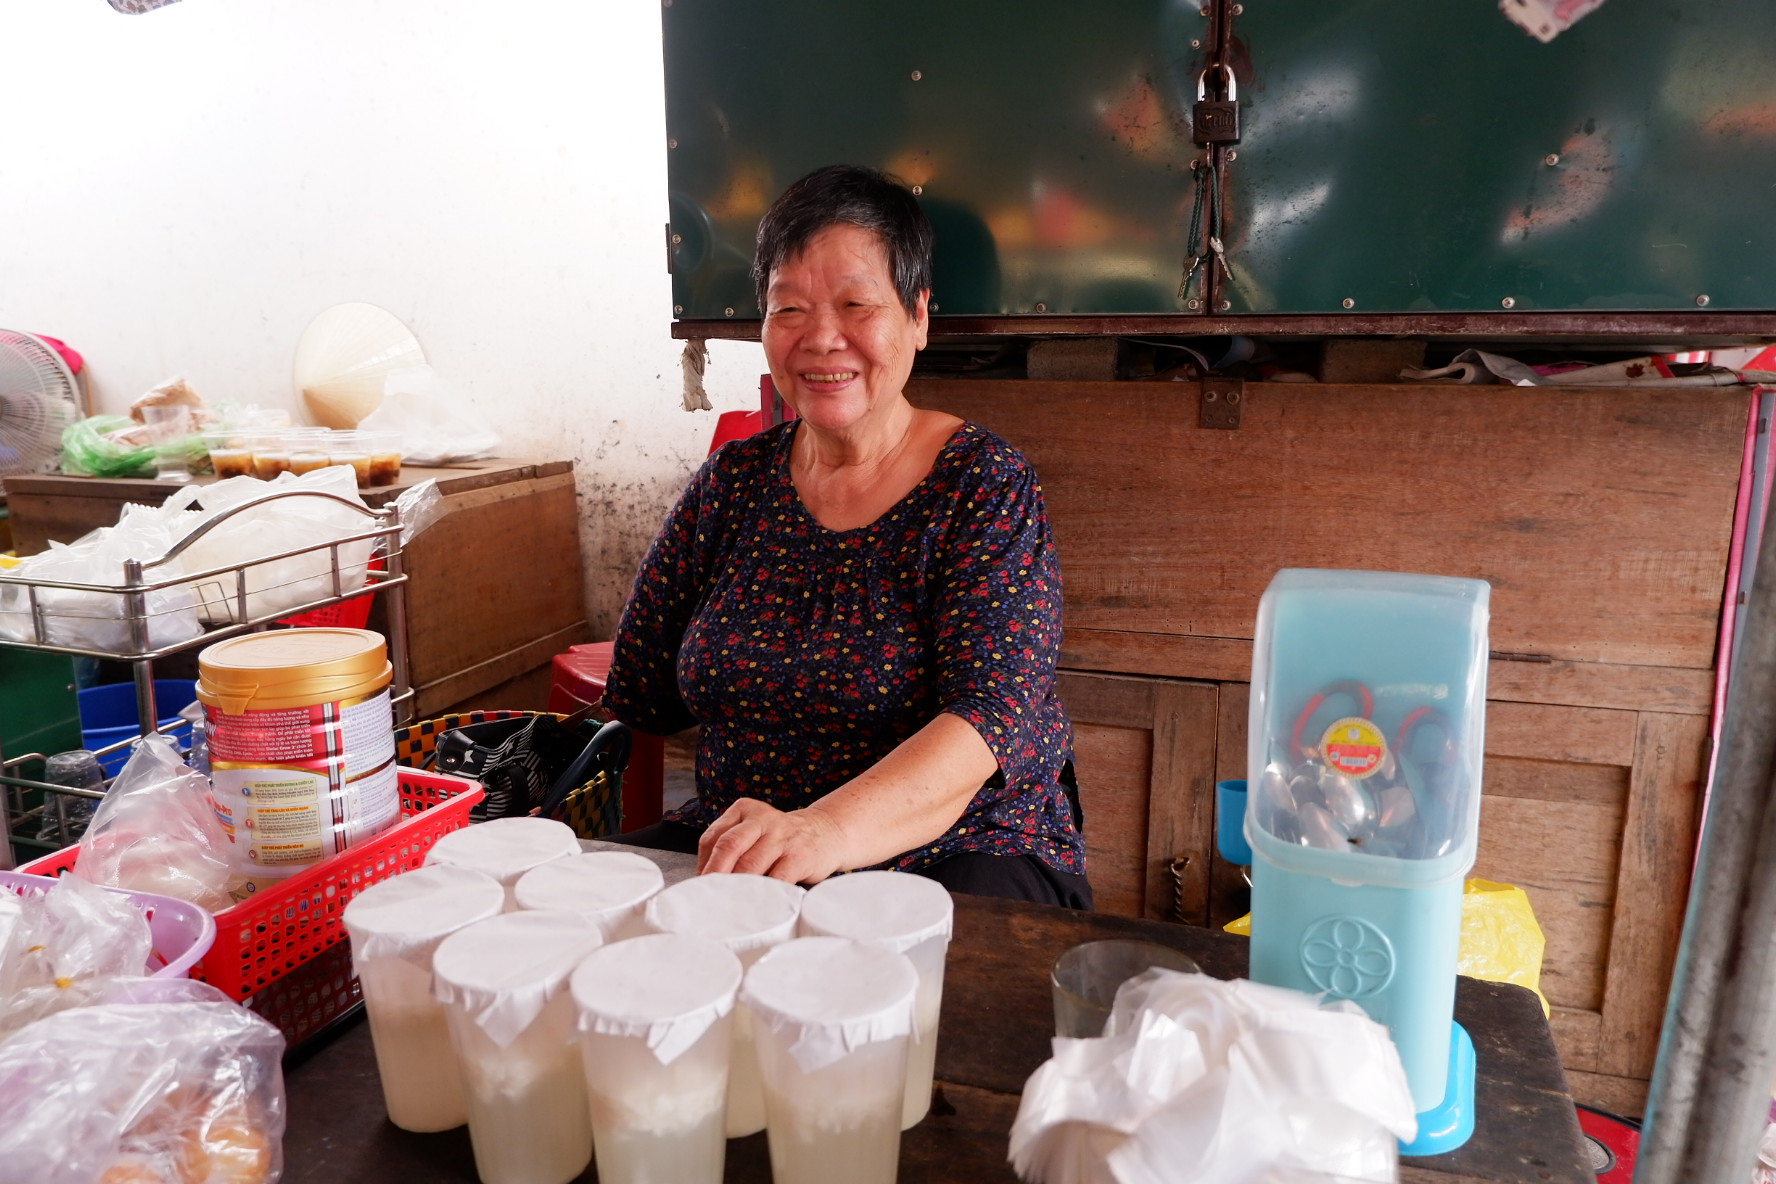 Món quà vặt ‘thơm ngọt, say say’ có mặt hơn 6 thập kỷ ở chợ Cộn Quảng Bình - 1